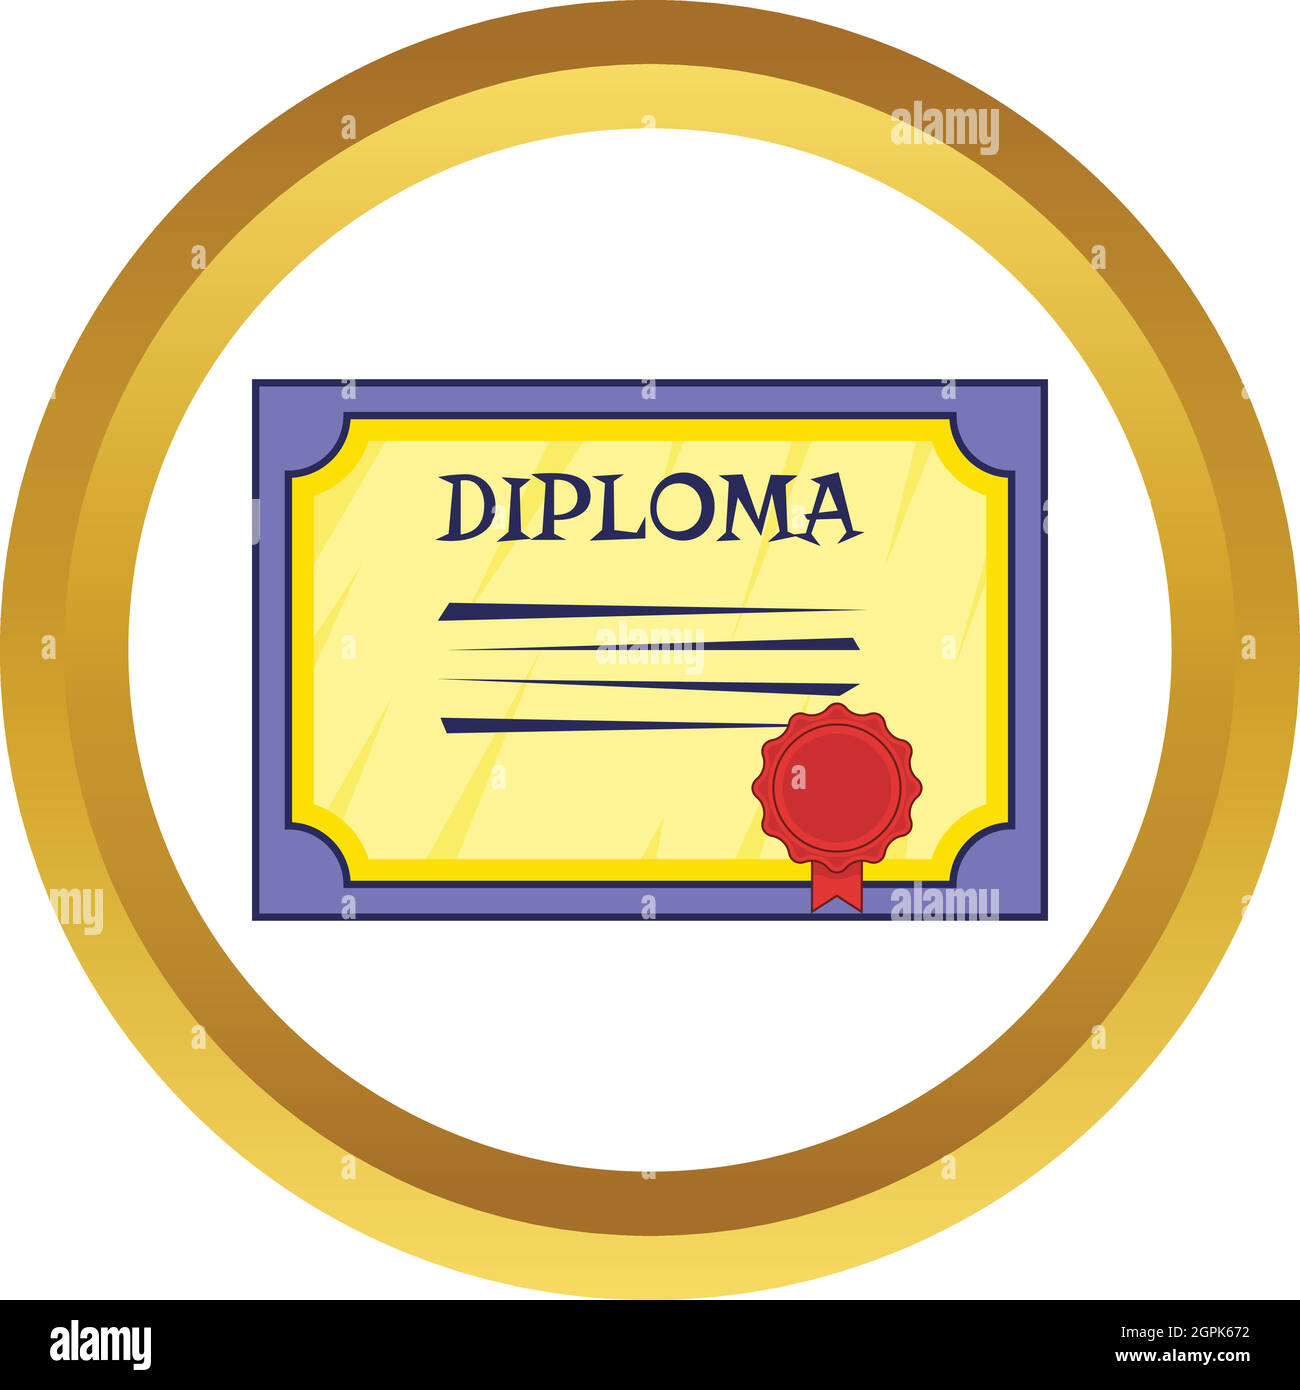 Diploma vector icon Stock Vector